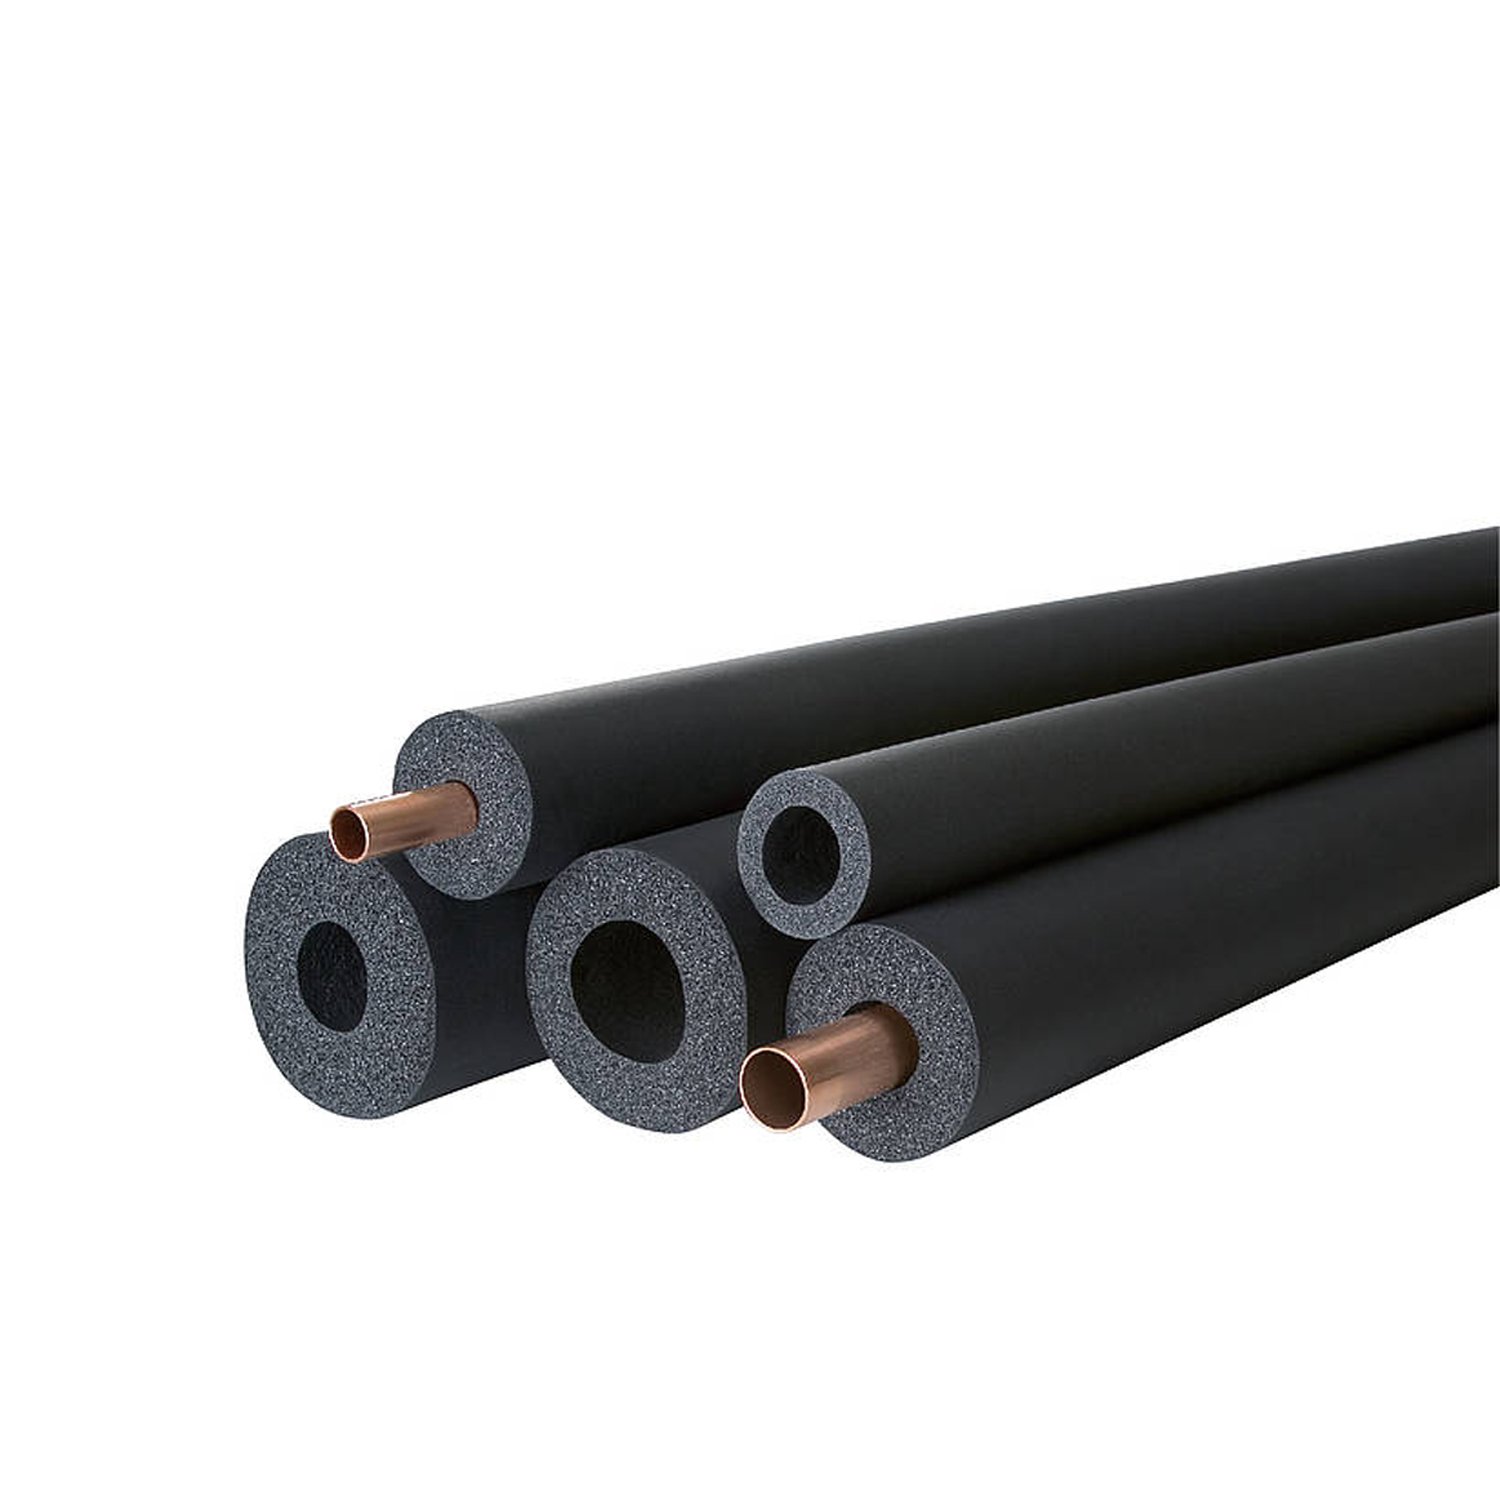 Af/armaflex af-6-022 2m/pcs pipe insulation - cell rubber